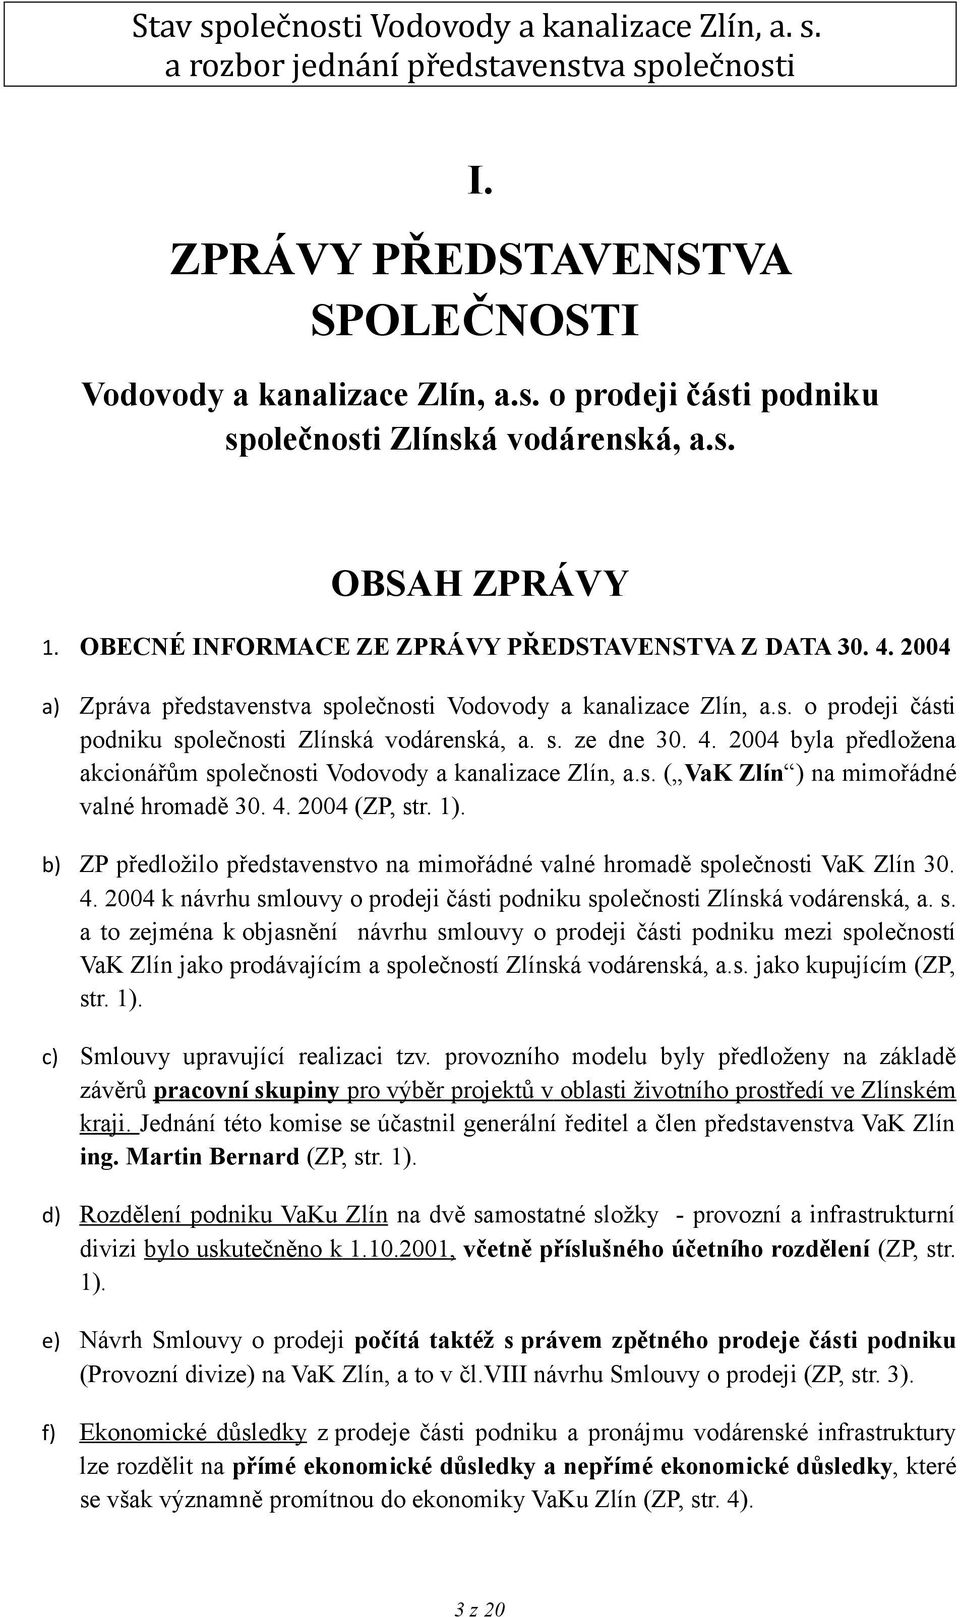 2004 byla předložena akcionářům společnosti Vodovody a kanalizace Zlín, a.s. ( VaK Zlín ) na mimořádné valné hromadě 30. 4. 2004 (ZP, str. 1).